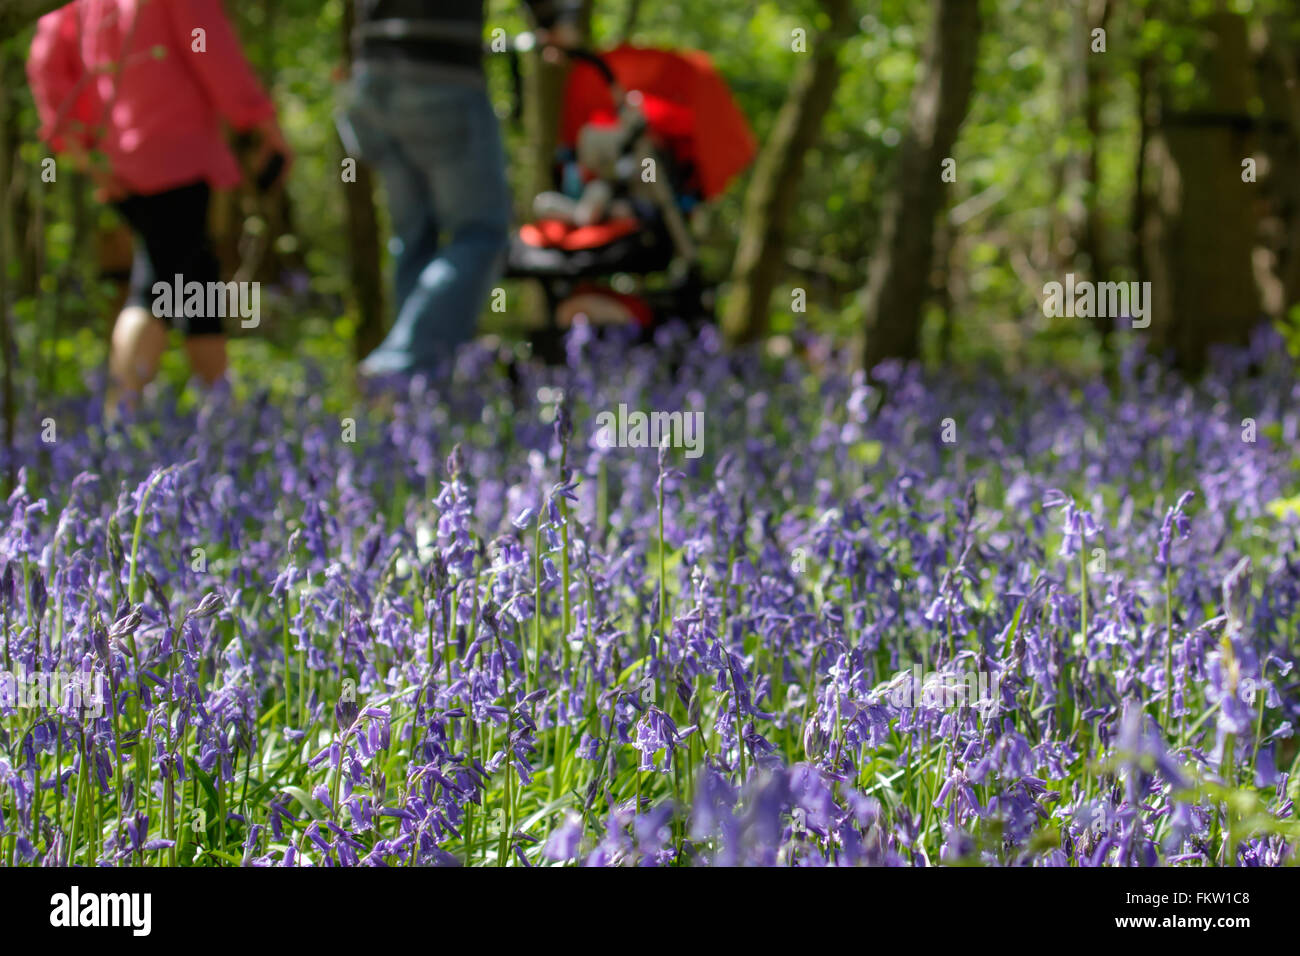 Family enjoying a walk through a carpet of Common Bluebells (Hyacinthoides non-scripta) in springtime. Stock Photo